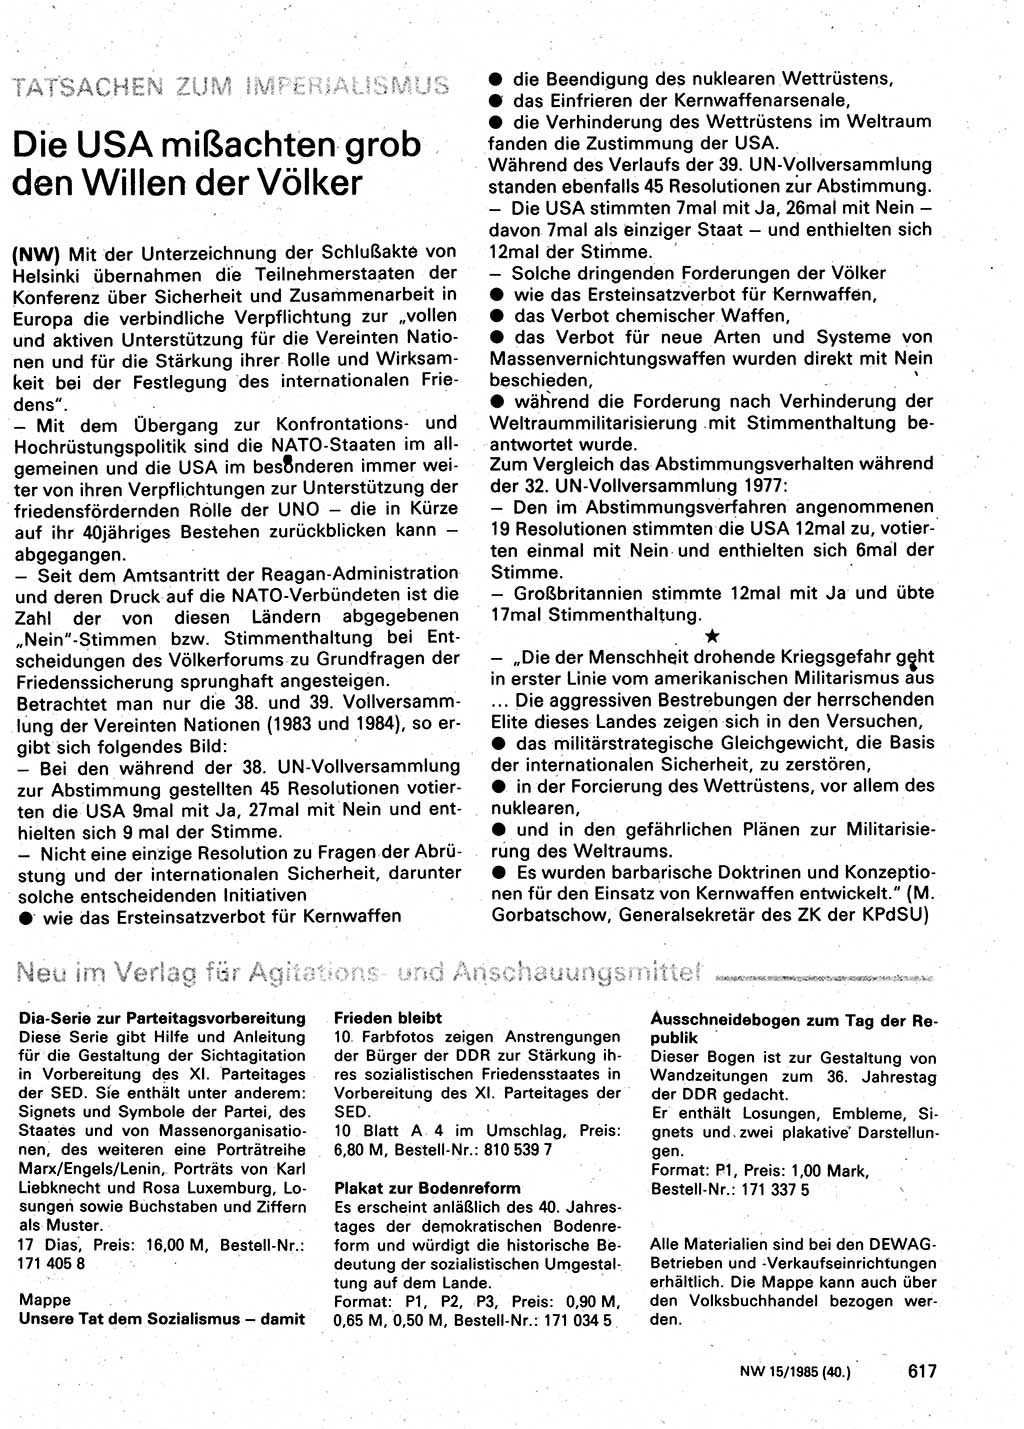 Neuer Weg (NW), Organ des Zentralkomitees (ZK) der SED (Sozialistische Einheitspartei Deutschlands) für Fragen des Parteilebens, 40. Jahrgang [Deutsche Demokratische Republik (DDR)] 1985, Seite 617 (NW ZK SED DDR 1985, S. 617)